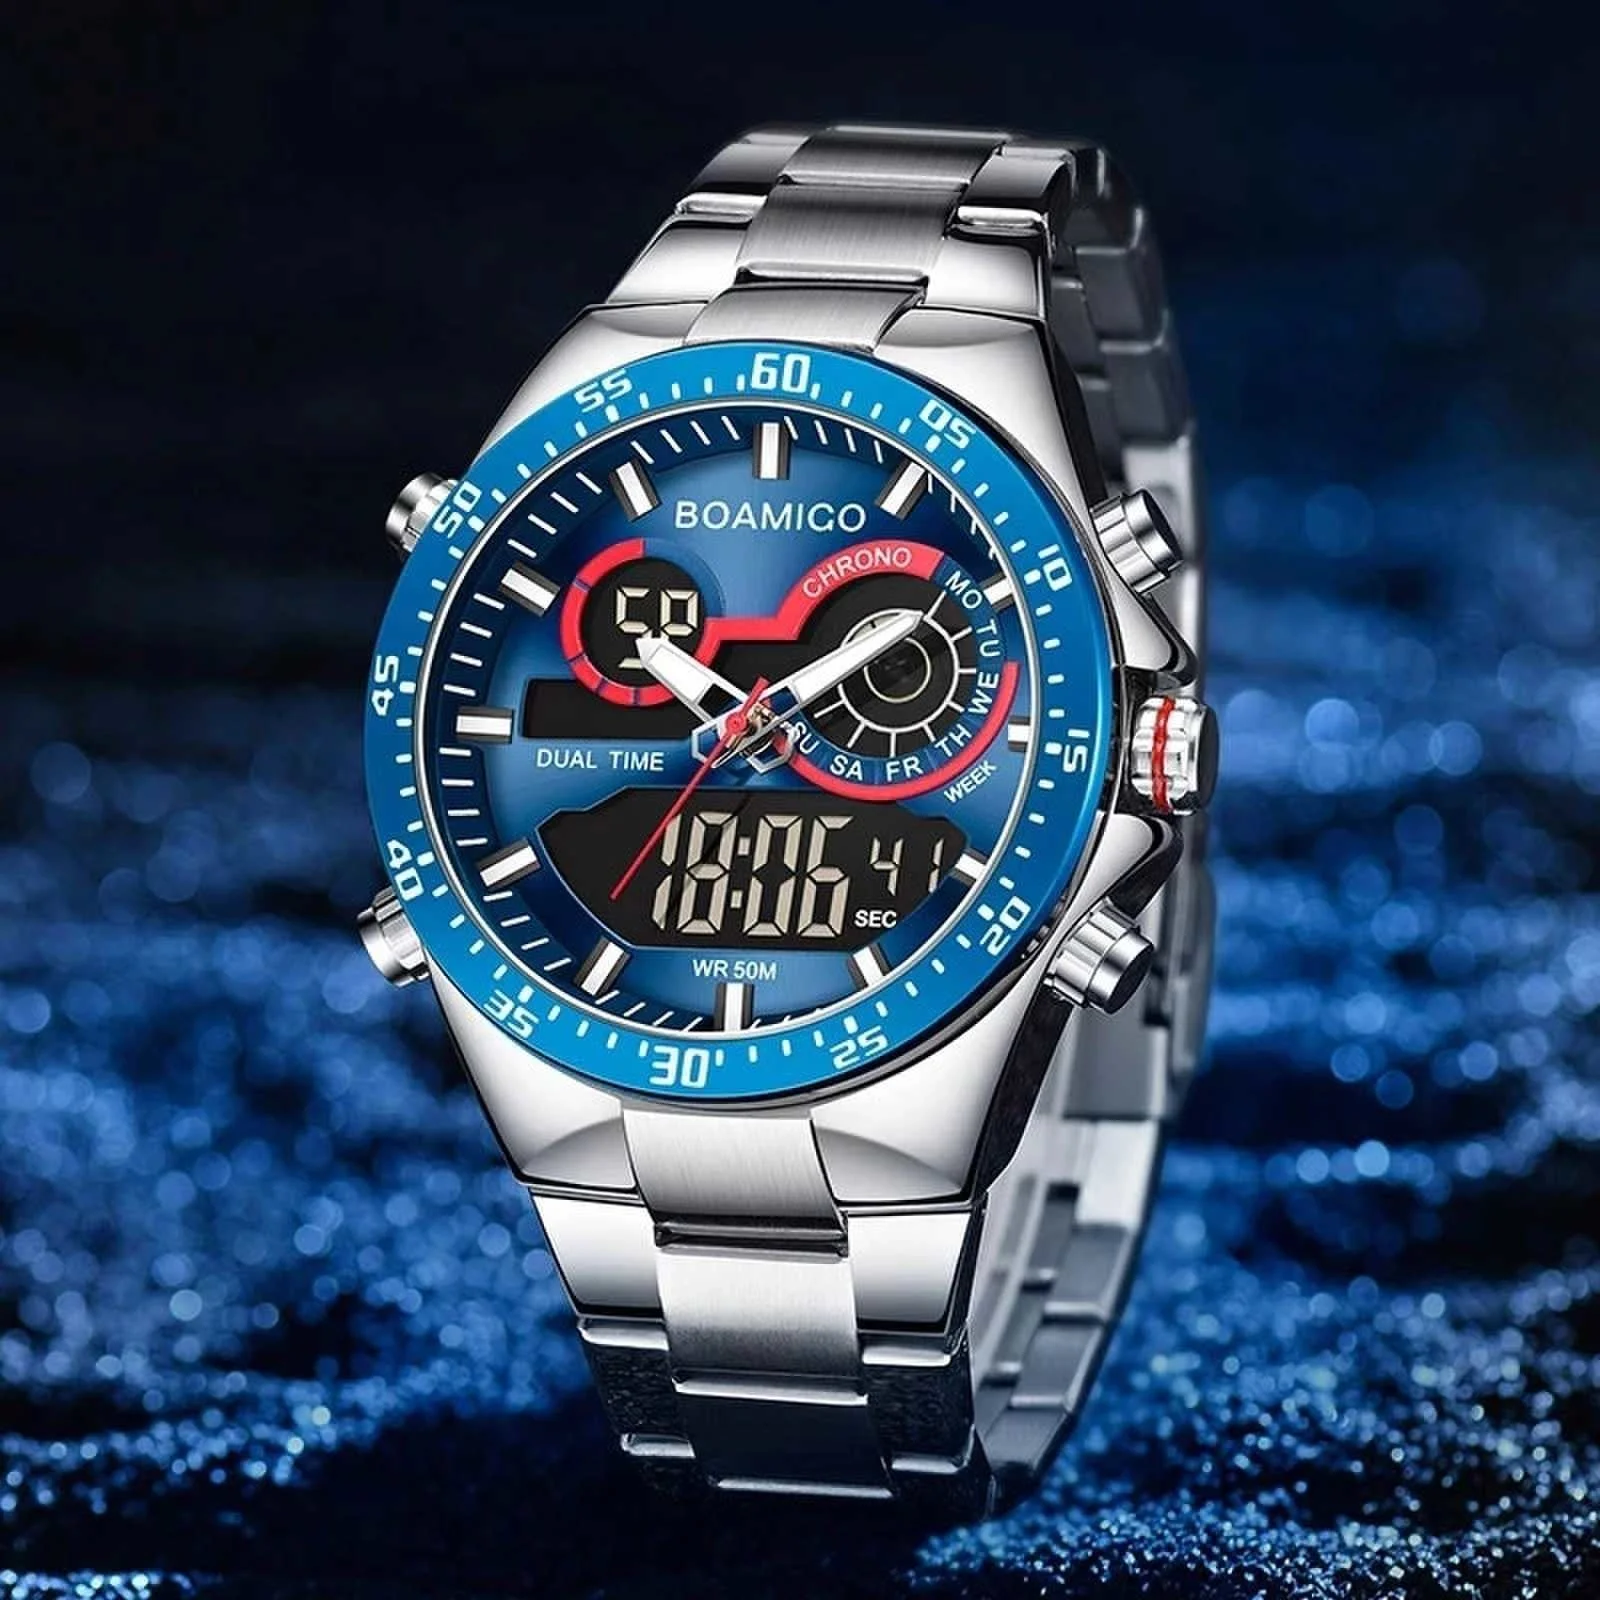 Роскошные мужские цифровые часы BOAMIGO F549 синего цвета, стильные водонепроницаемые часы с браслетом из нержавеющей стали, показывают Неделю в деловом стиле